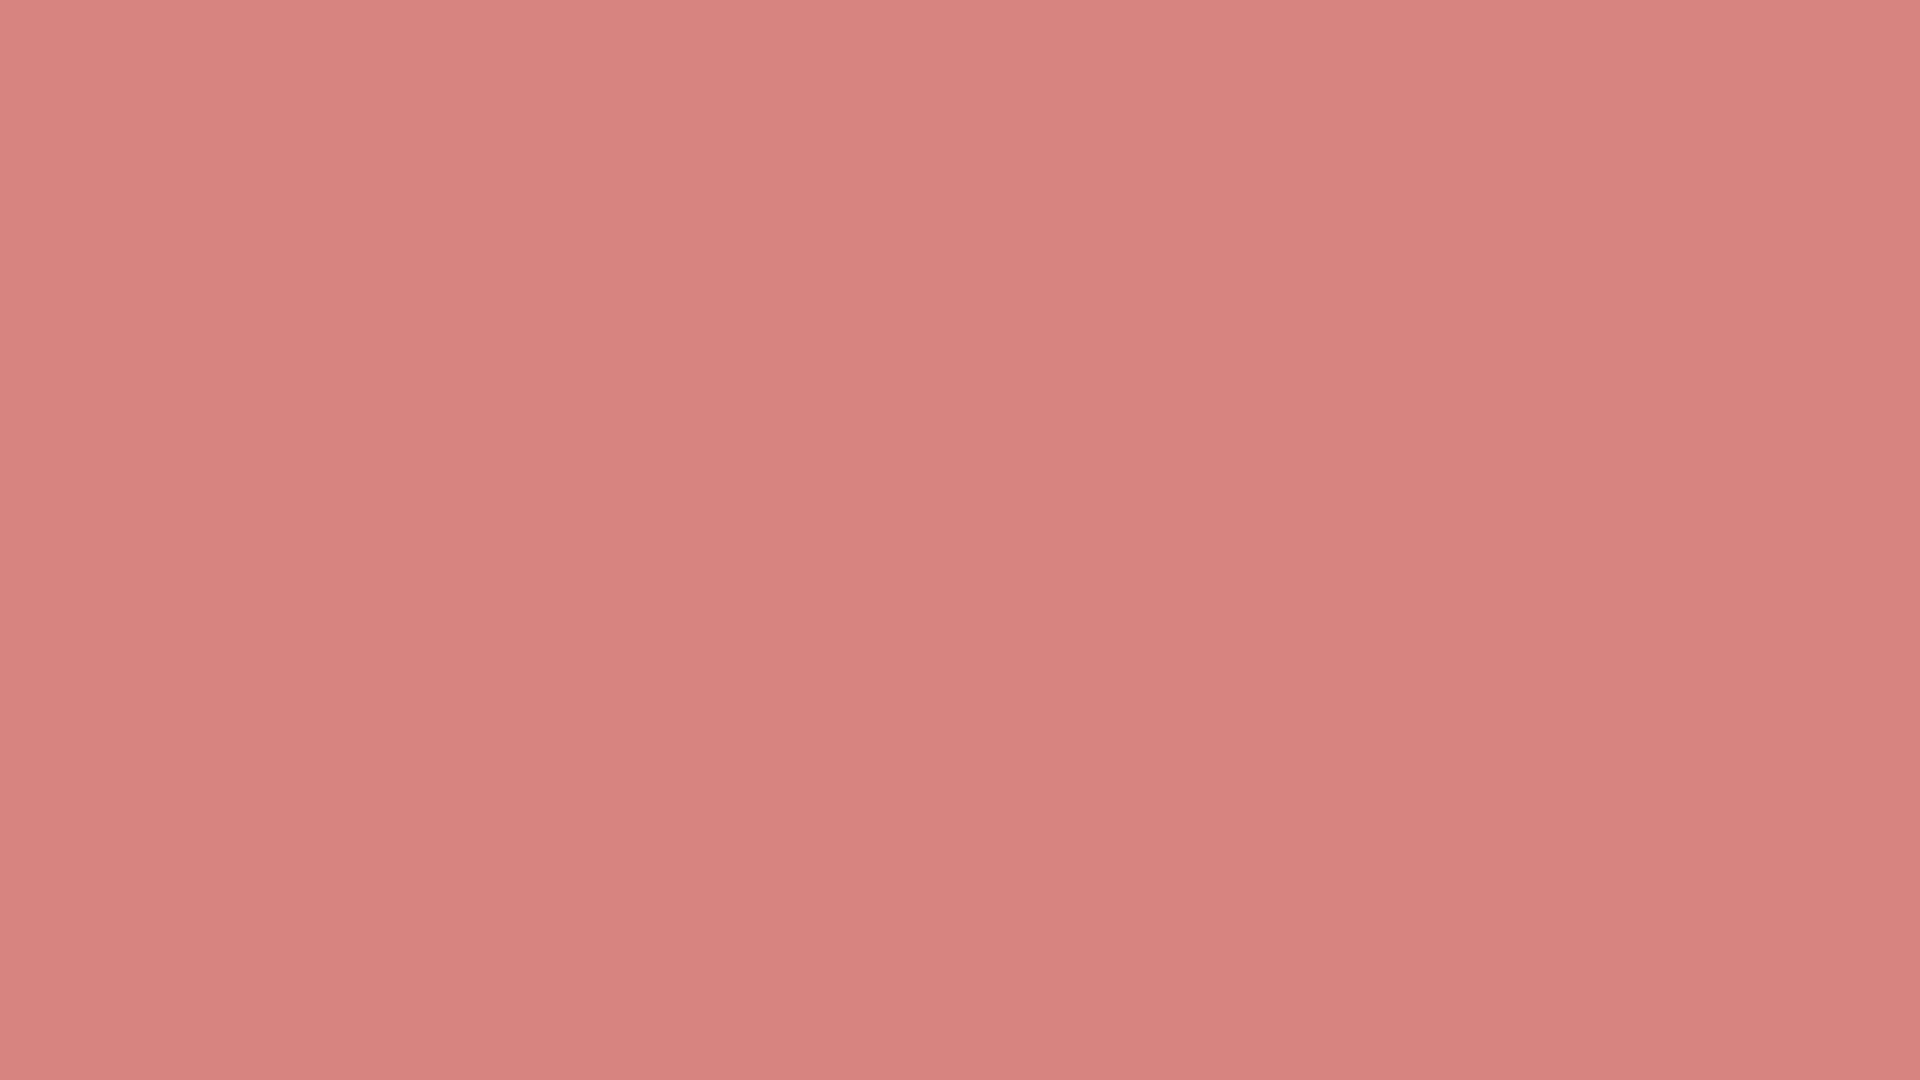 Fügensie Einen Hauch Von Pink Hinzu Mit Diesen Sanften Rosa Einfarbigen Hintergrundbildern! Wallpaper